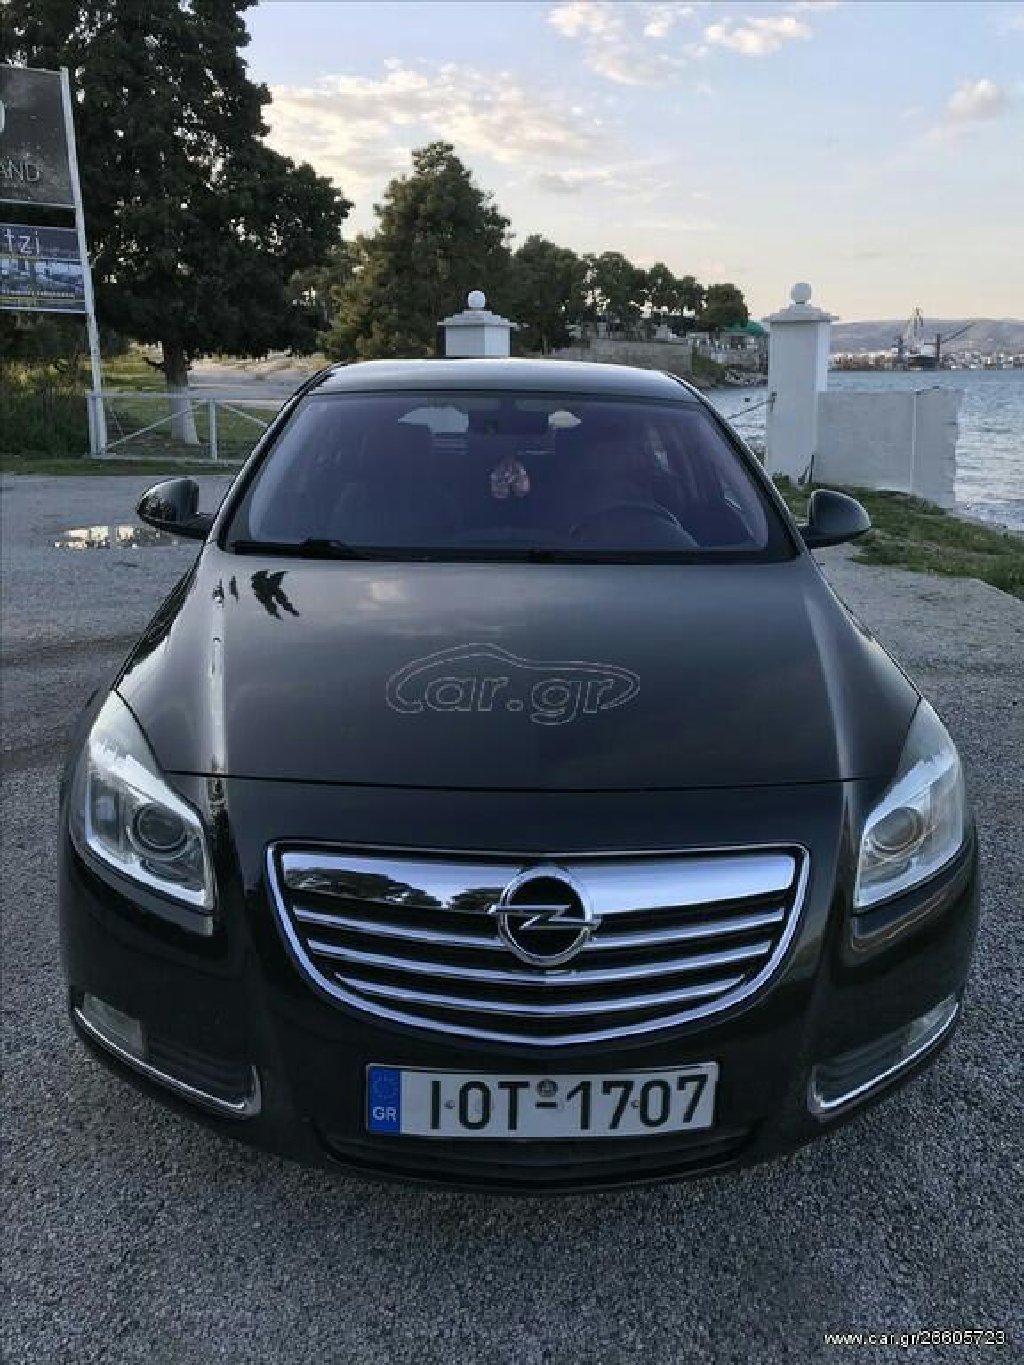 Opel: Opel Insignia: 1.6 l. | 2010 έ. | 122300 km. | Sedan — 1